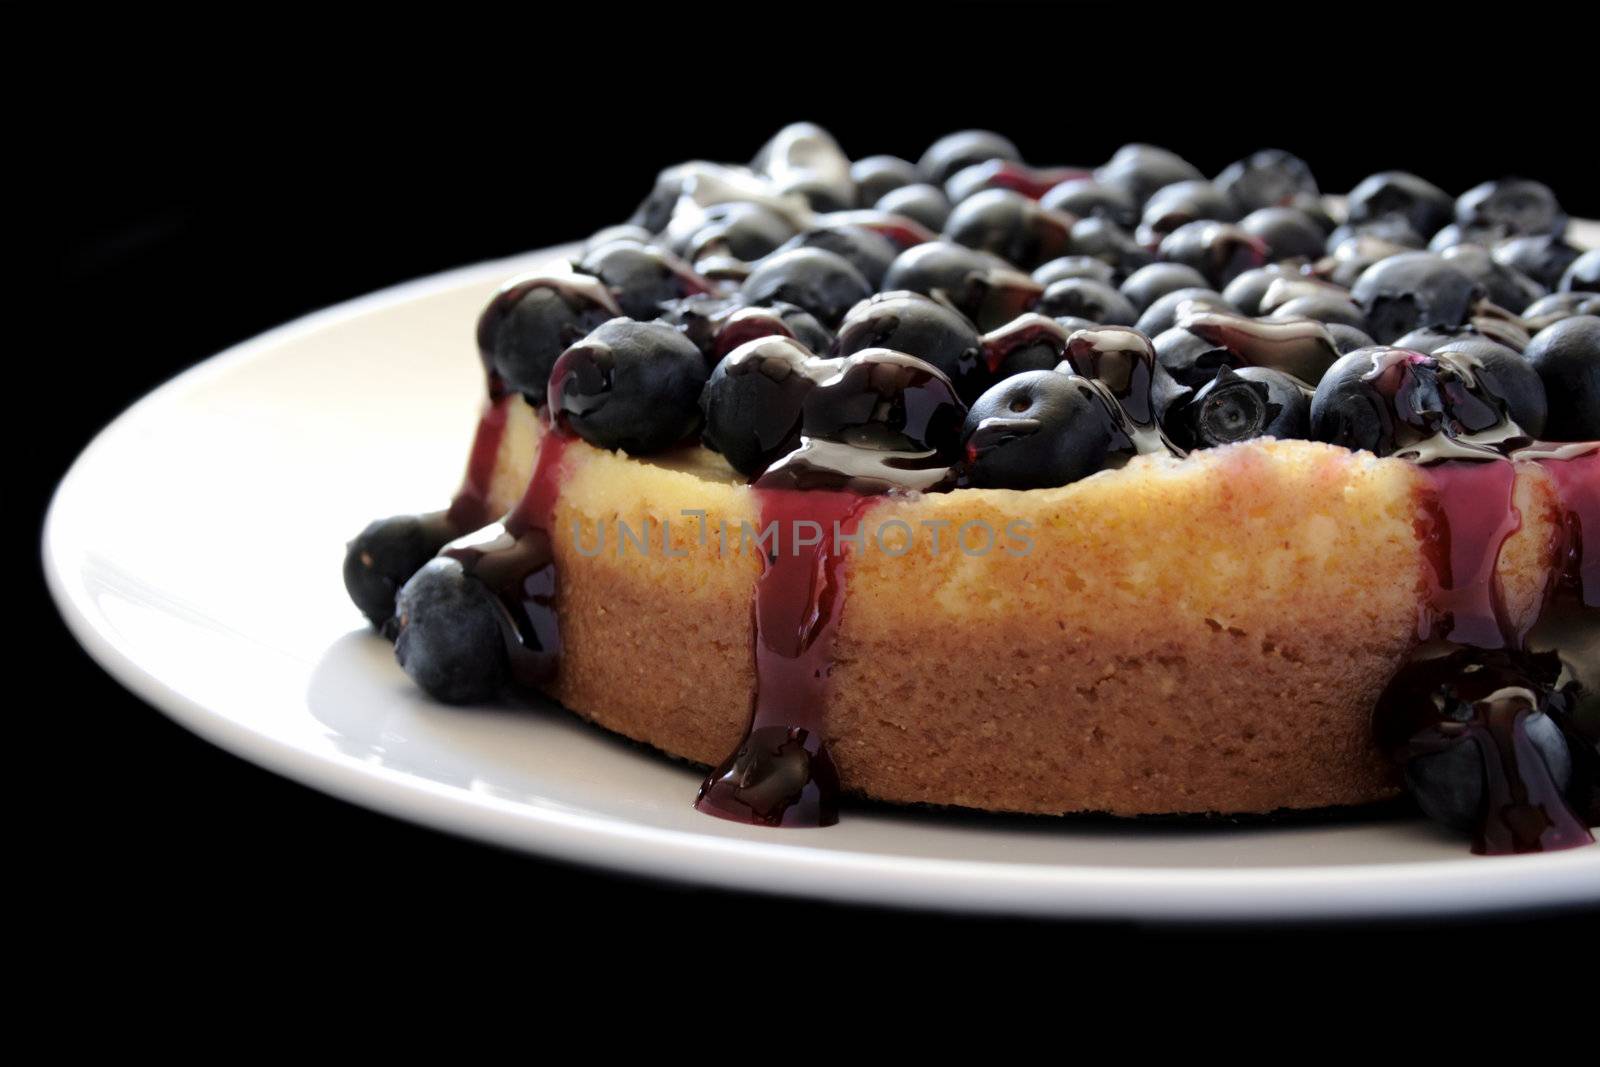 blueberry cheesecake by nebari